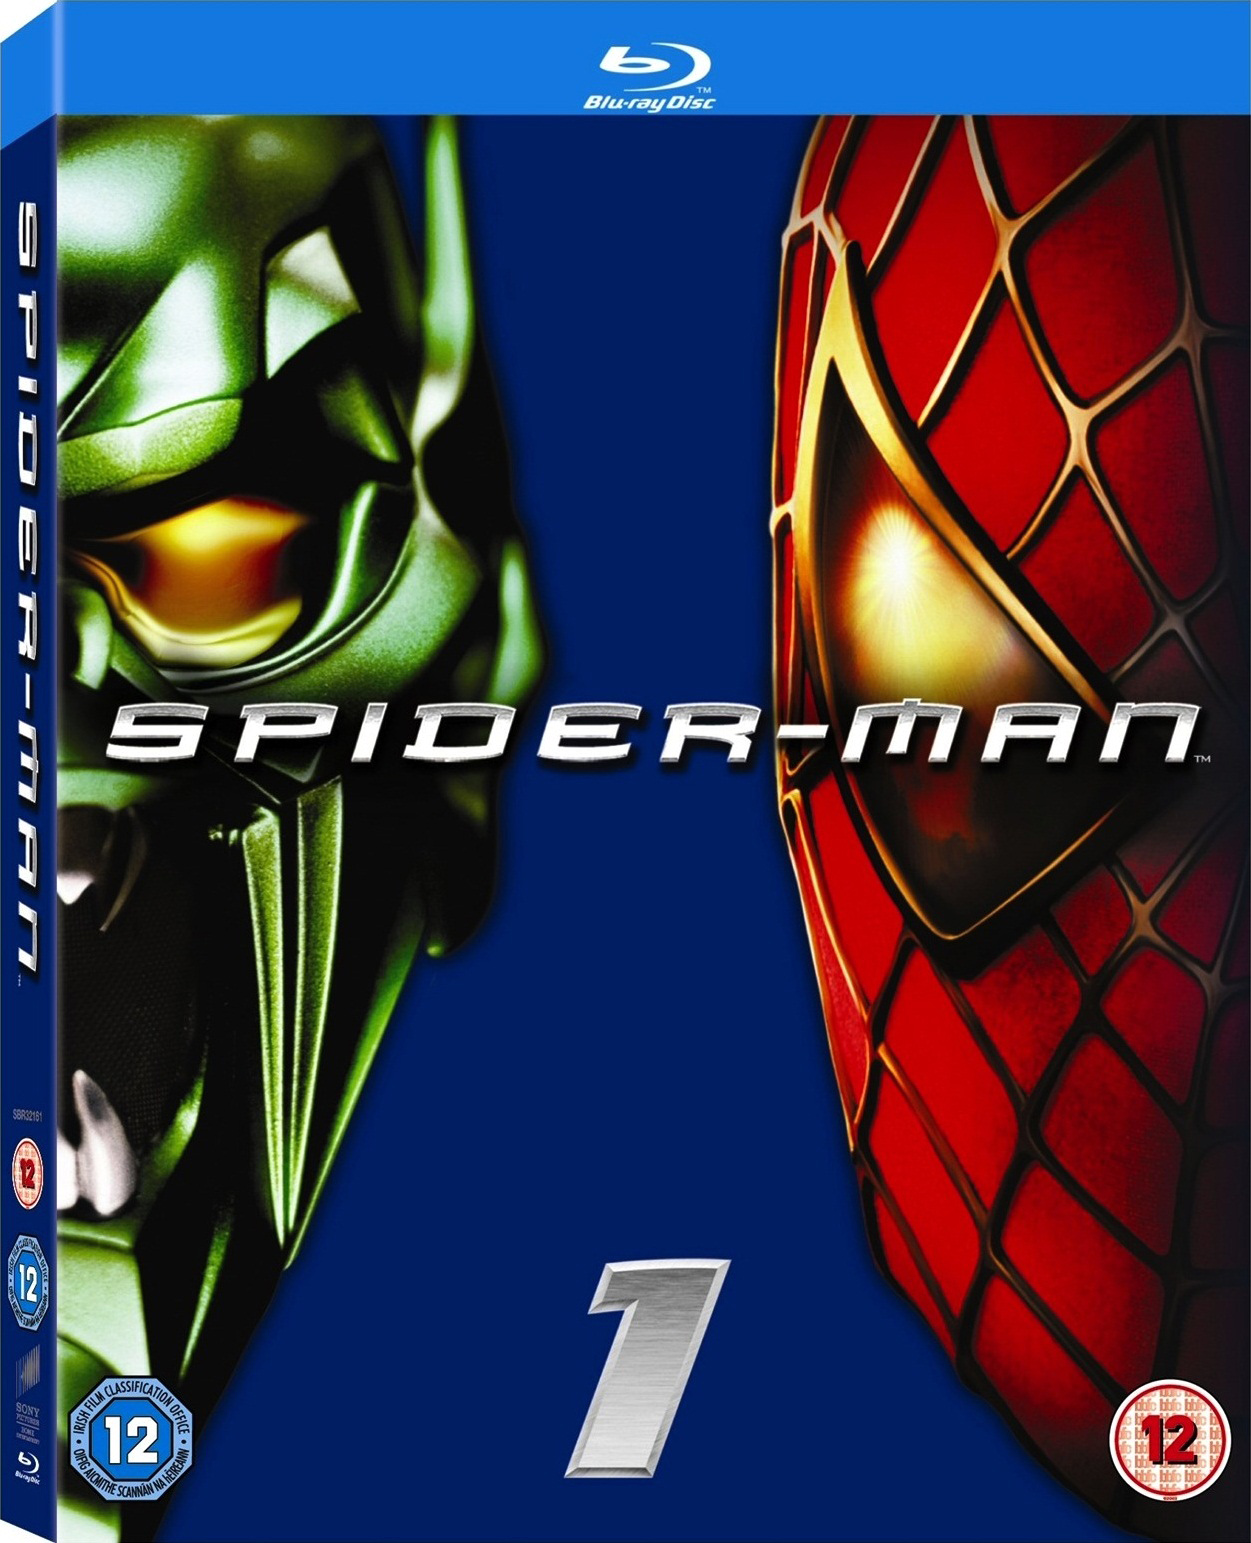 |倒序浏览 |阅读模式 [蜘蛛侠1].Spider-Man.2002.UHD.BluRay.2160p.HEVC.TrueHD.7.1-winning@CHDBits    54.57G-4.jpg